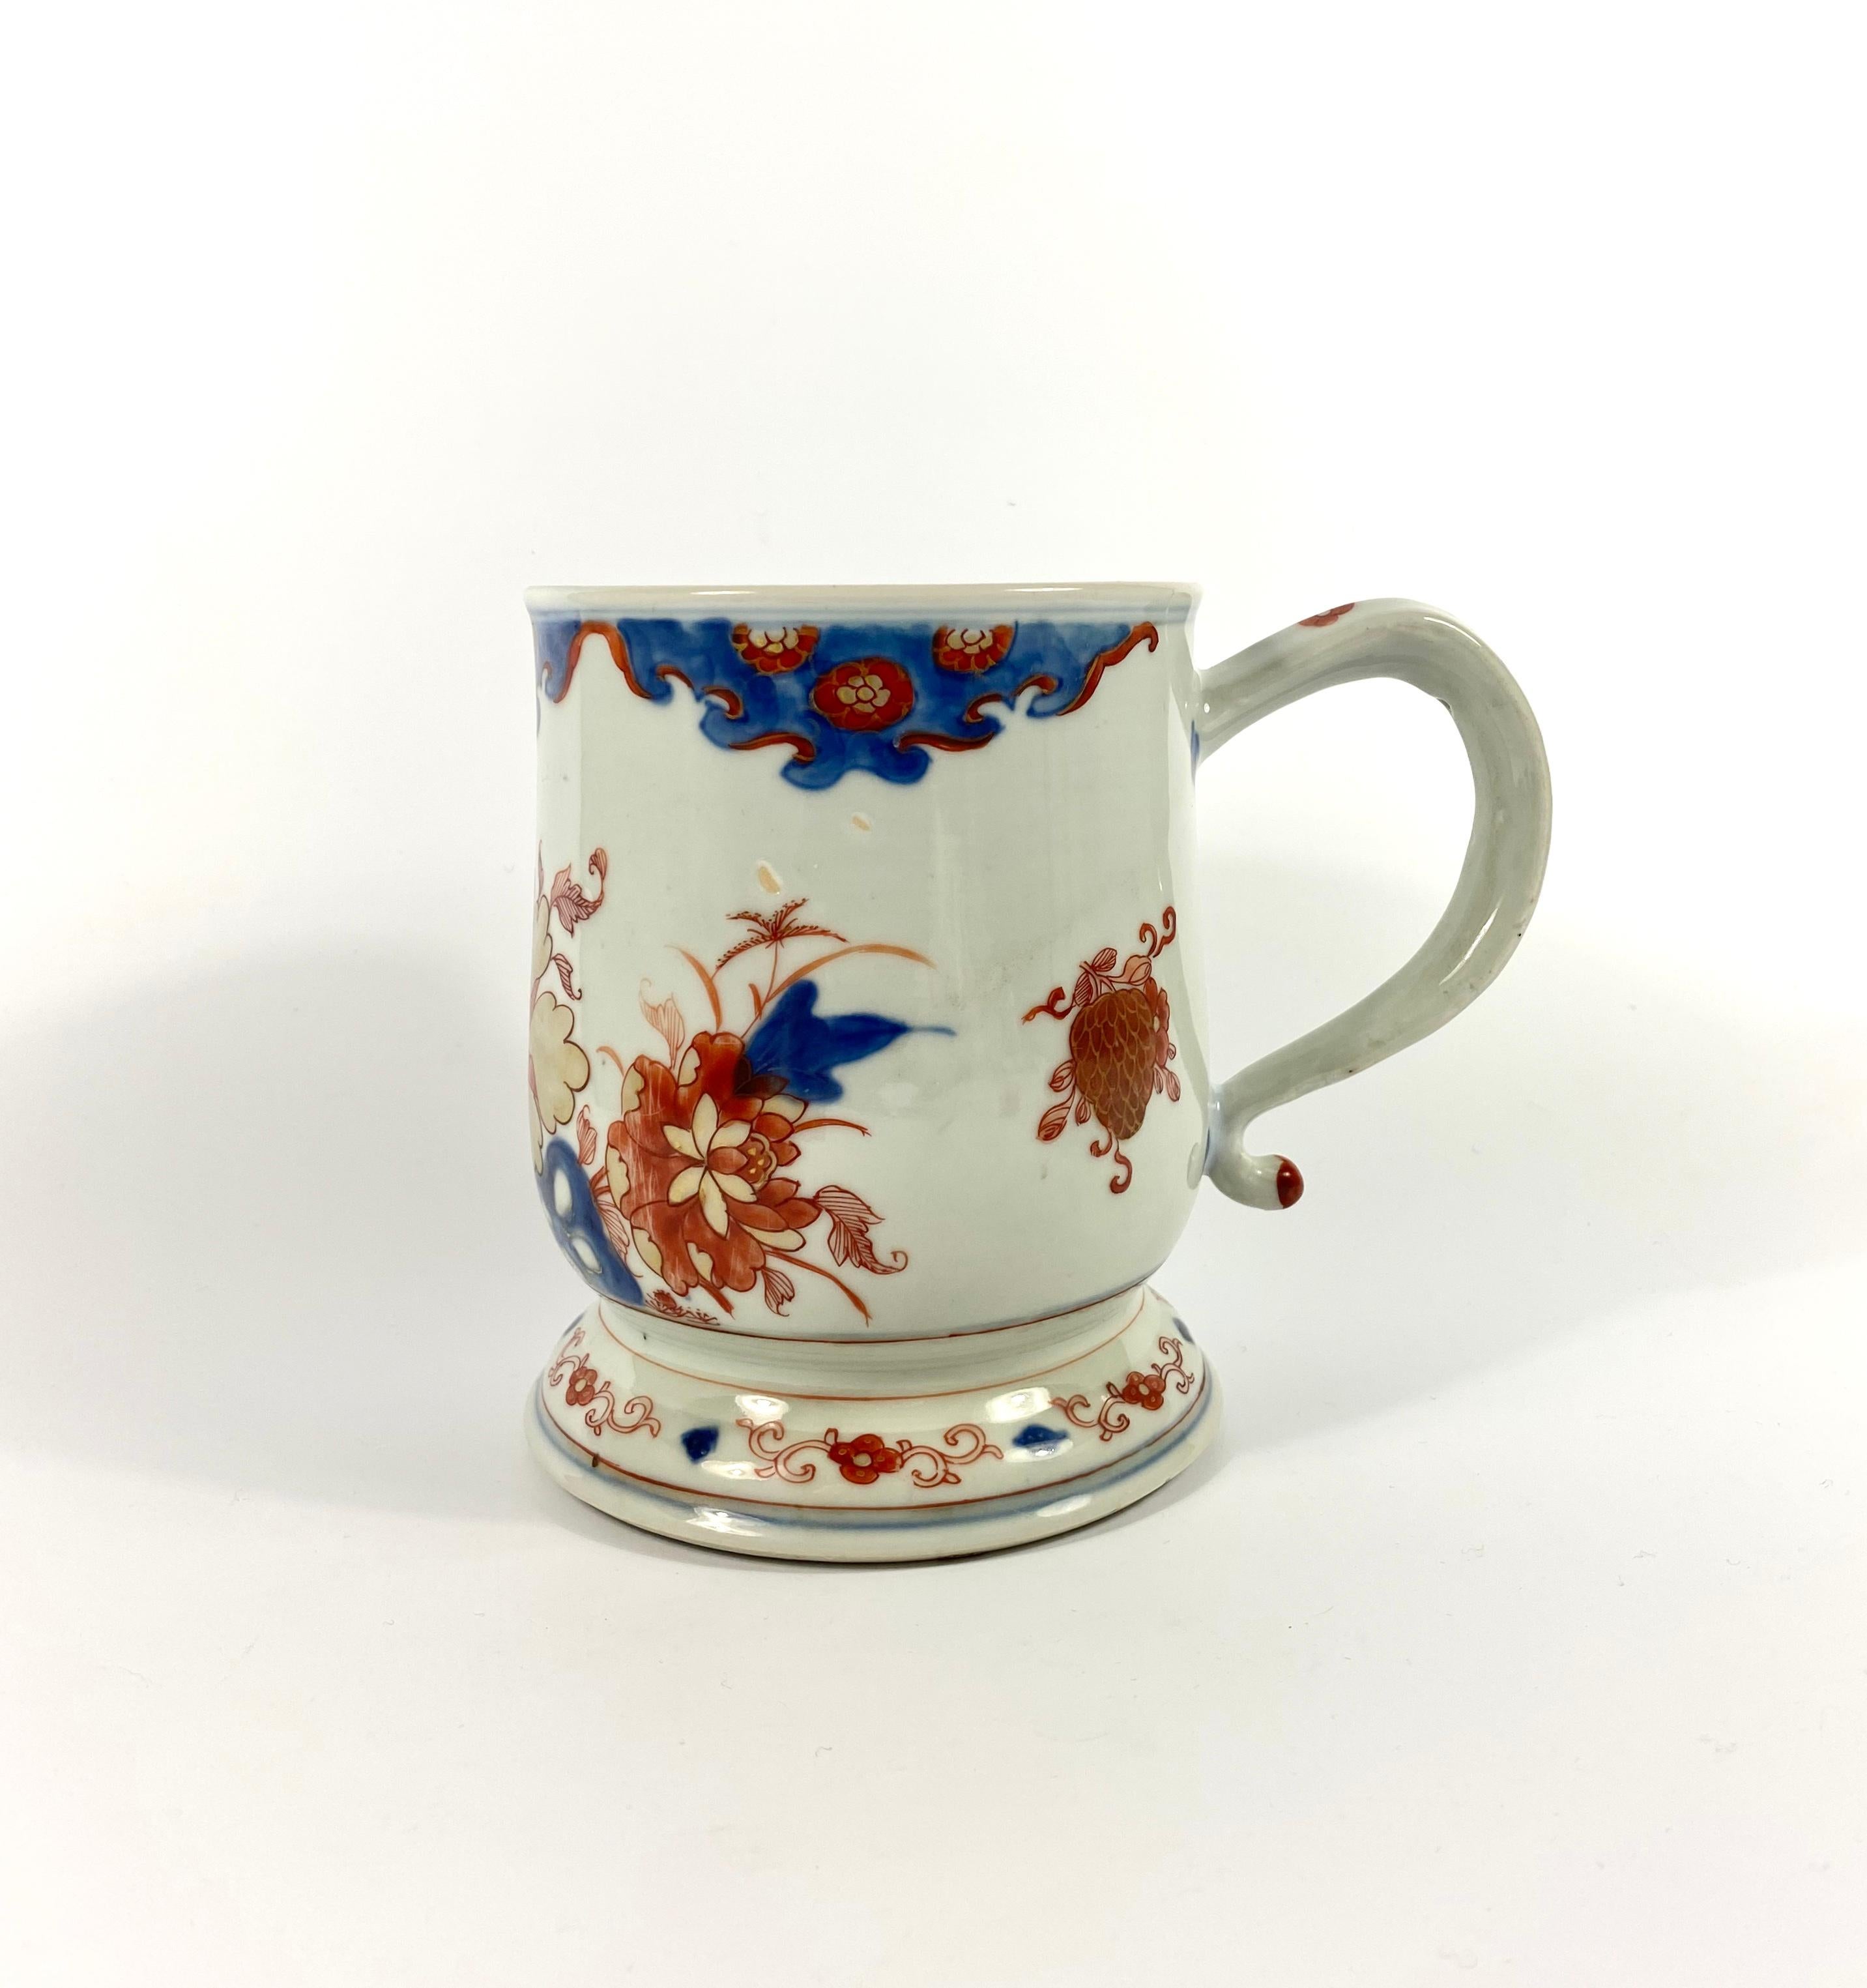 Qing Chinese Imari Porcelain Mug, circa 1720, Kangxi Period